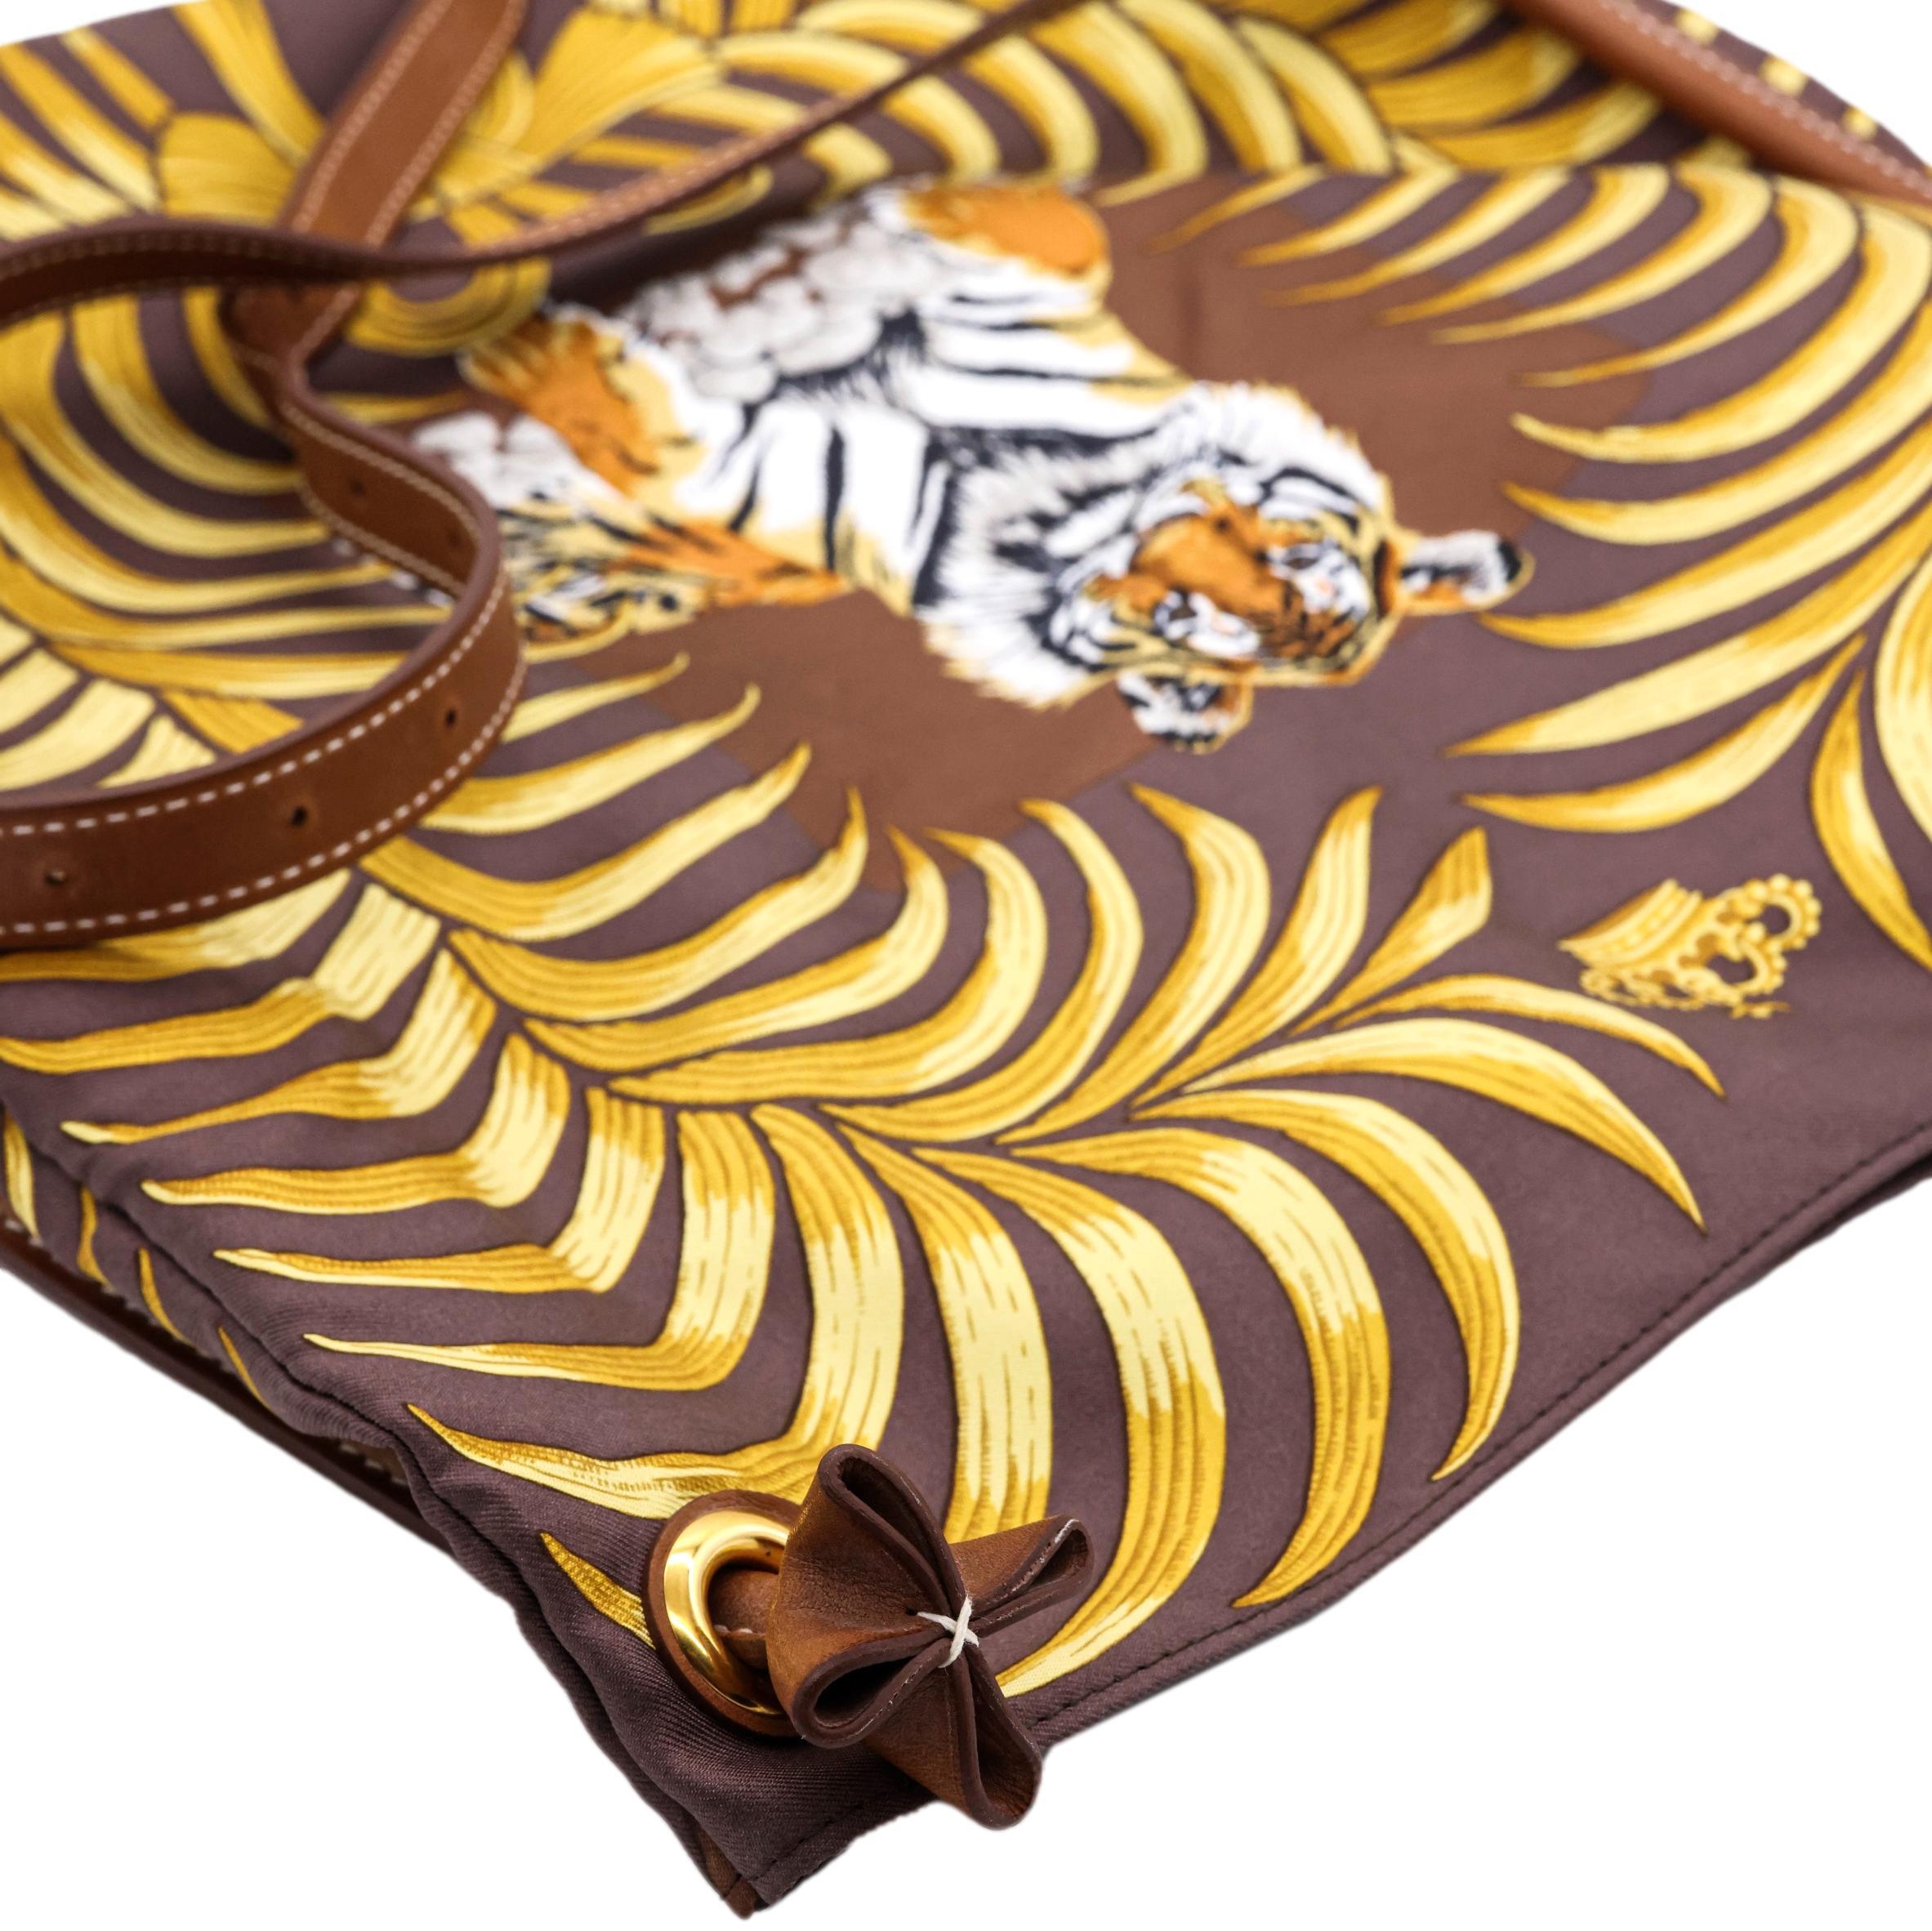 Hermès Limited Edition Silky City Tiger Royal Barenia Leather Shoulder Bag, 2008. 3